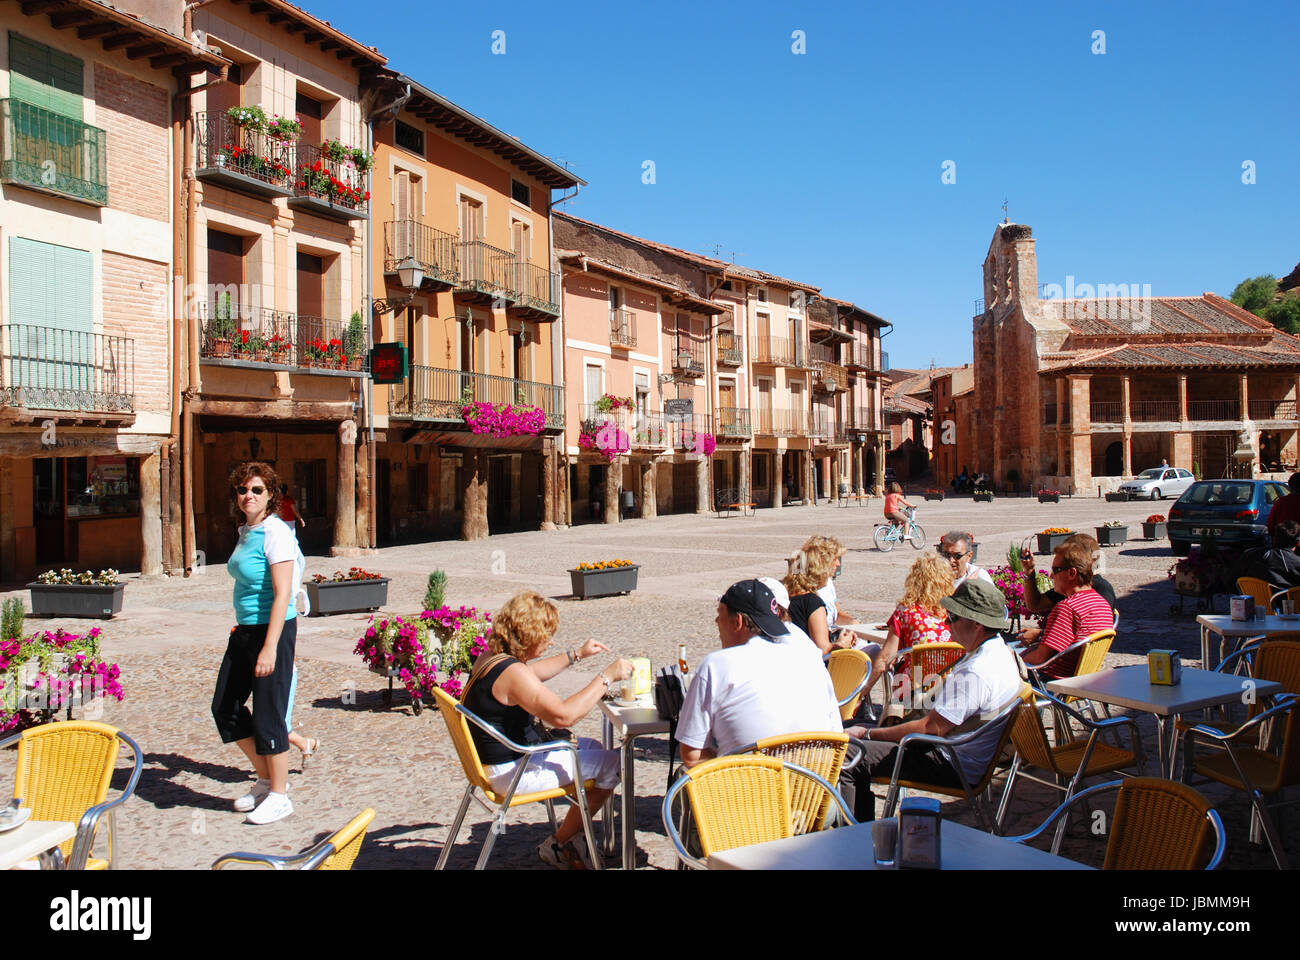 Terraces at Plaza Mayor. Ayllon, Segovia province, Castilla Leon, Spain. Stock Photo